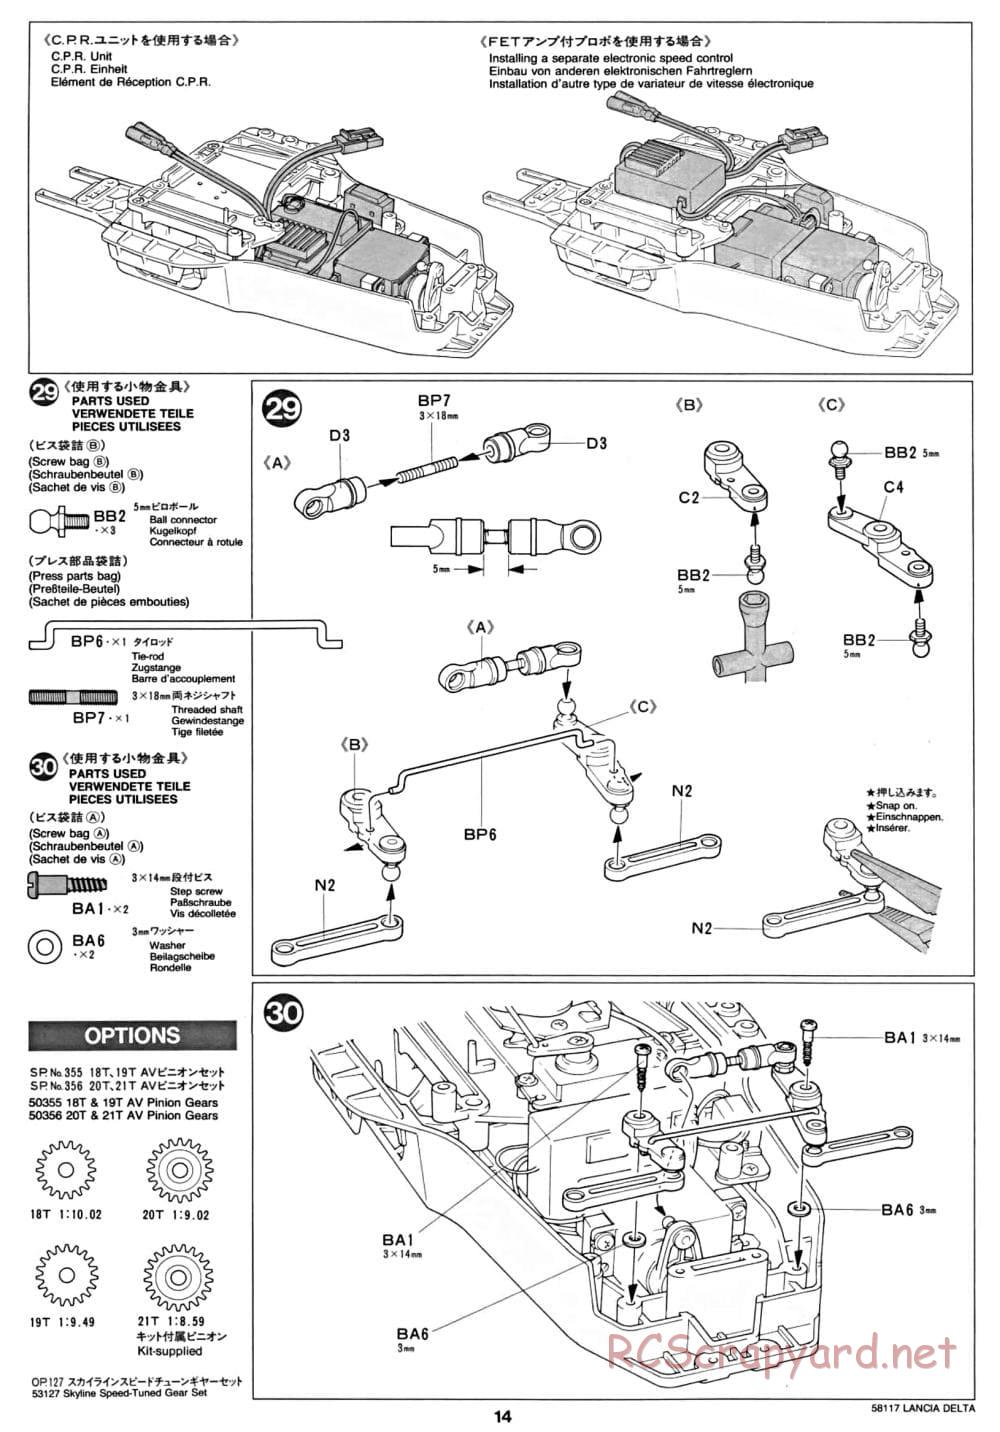 Tamiya - Lancia Delta HF Integrale - TA-01 Chassis - Manual - Page 14